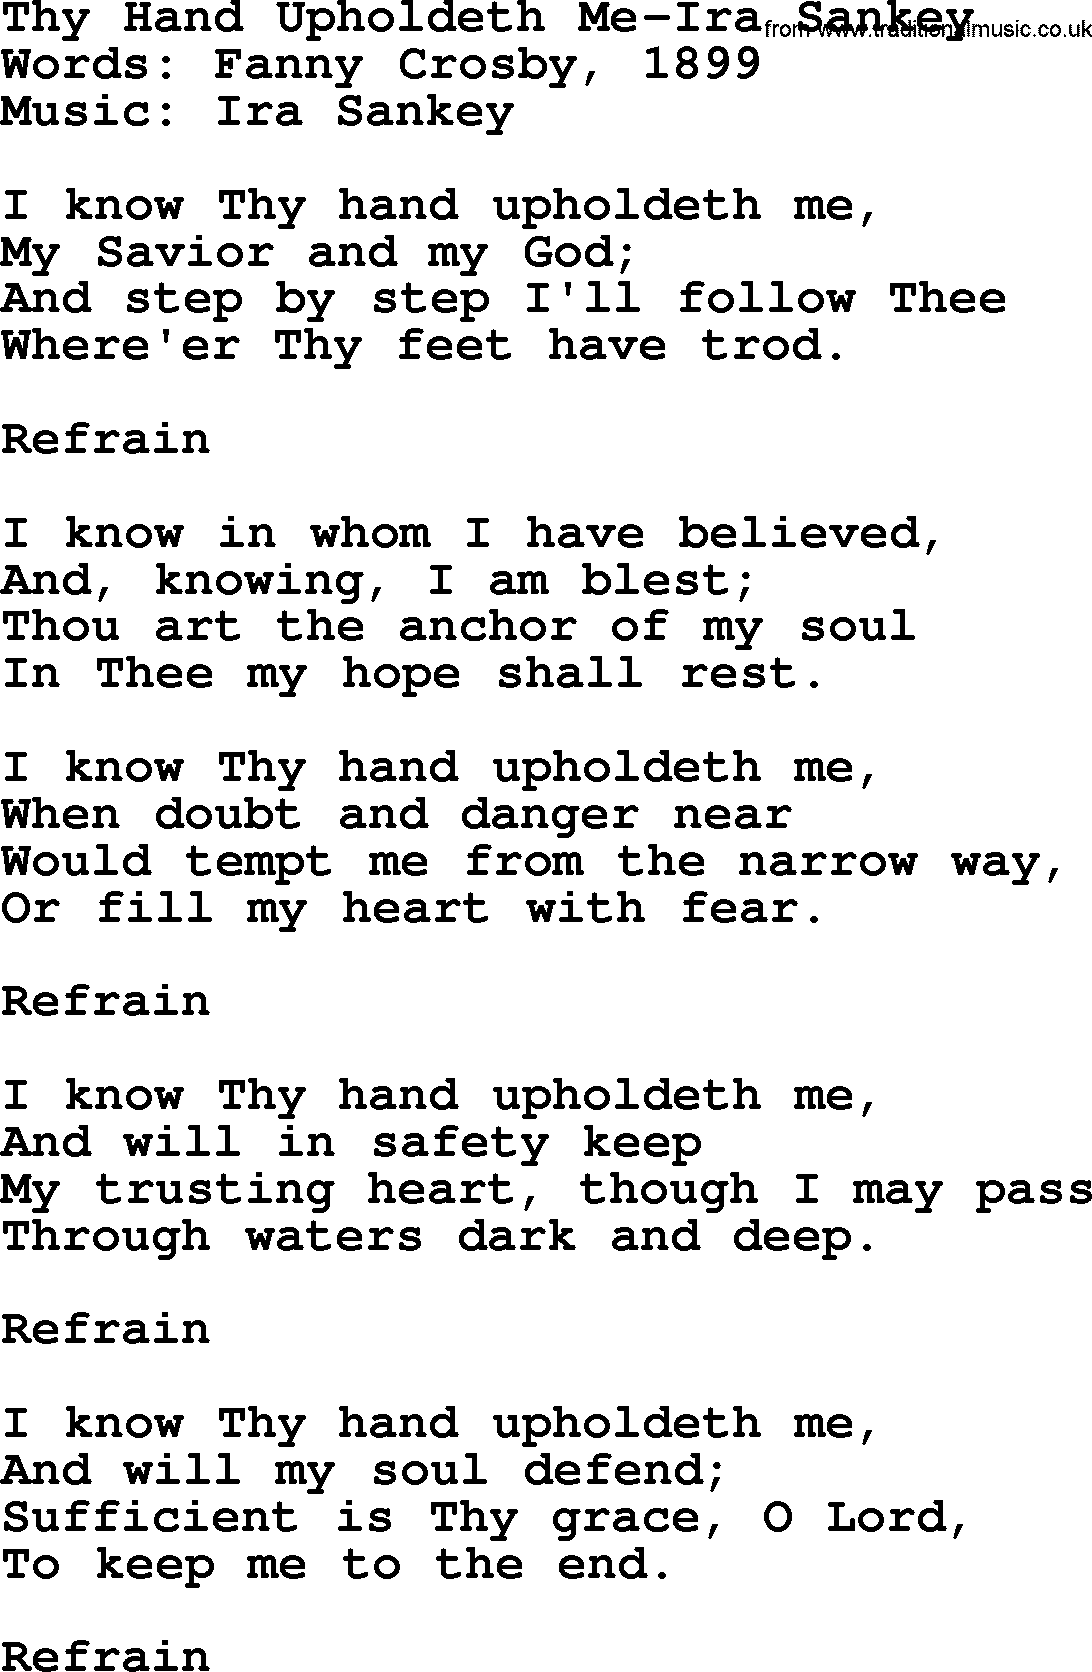 Ira Sankey hymn: Thy Hand Upholdeth Me-Ira Sankey, lyrics